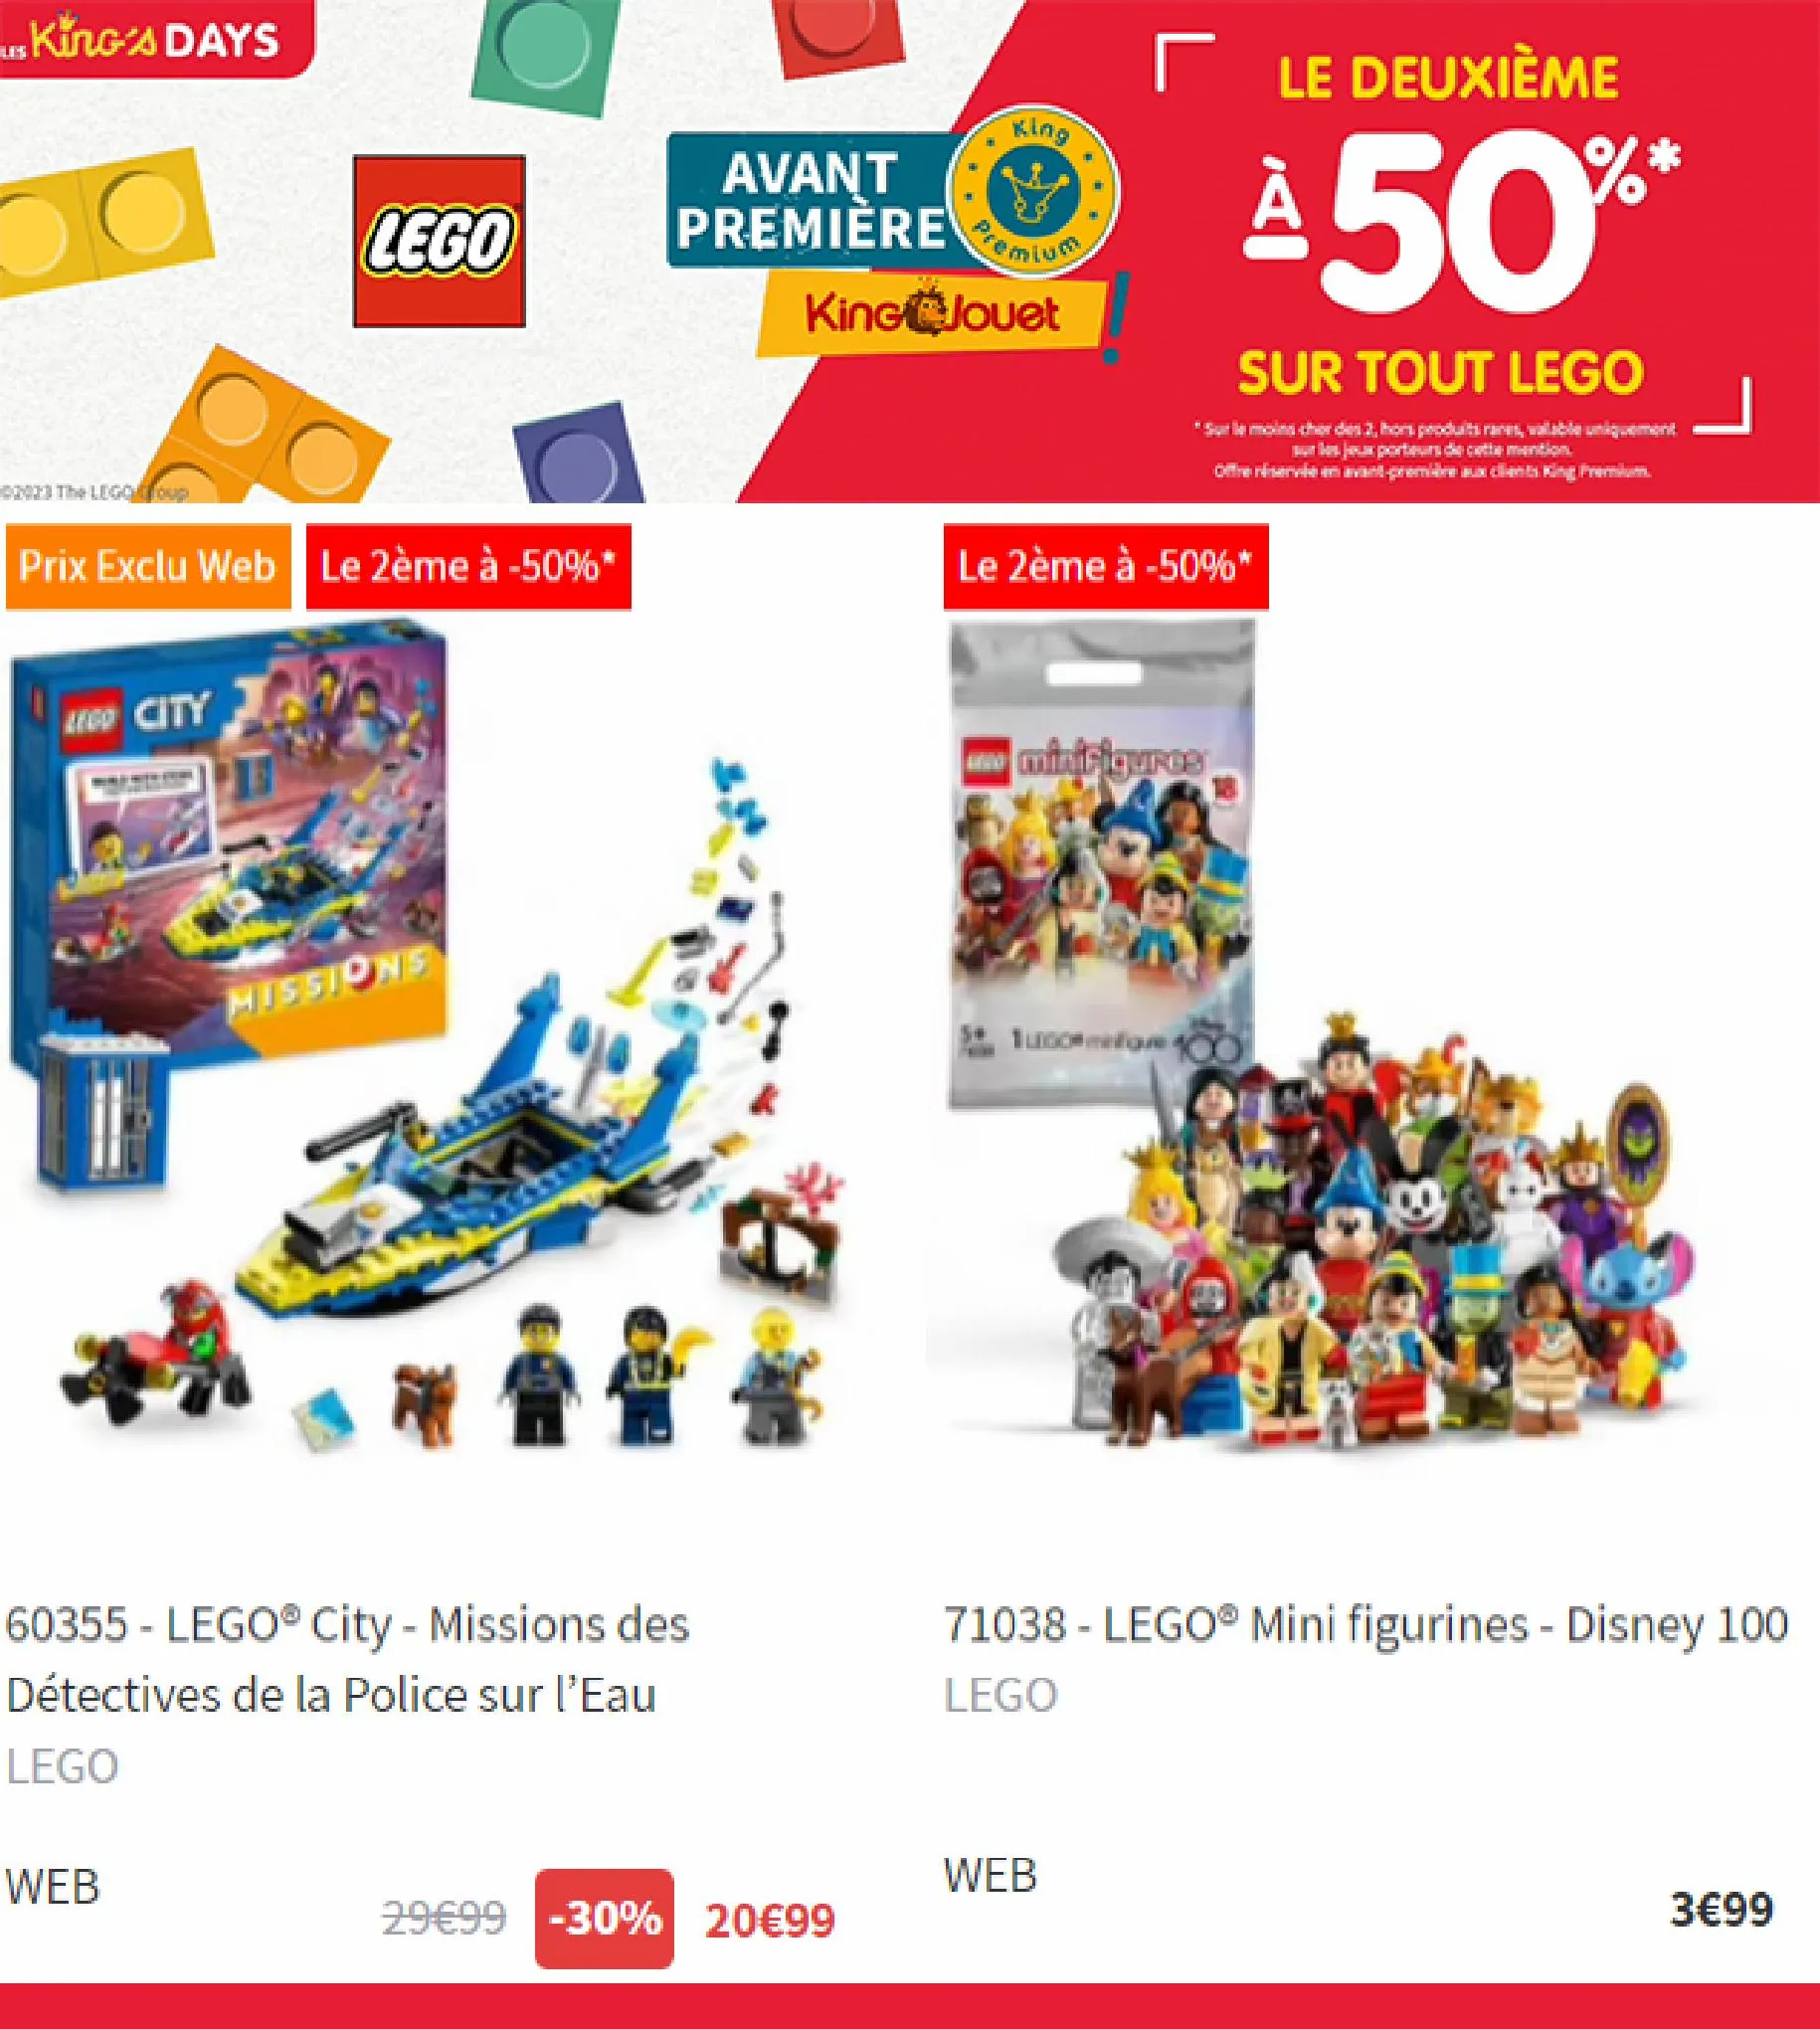 Catalogue Le deuxieme a -50% sur tout LEGO, page 00006